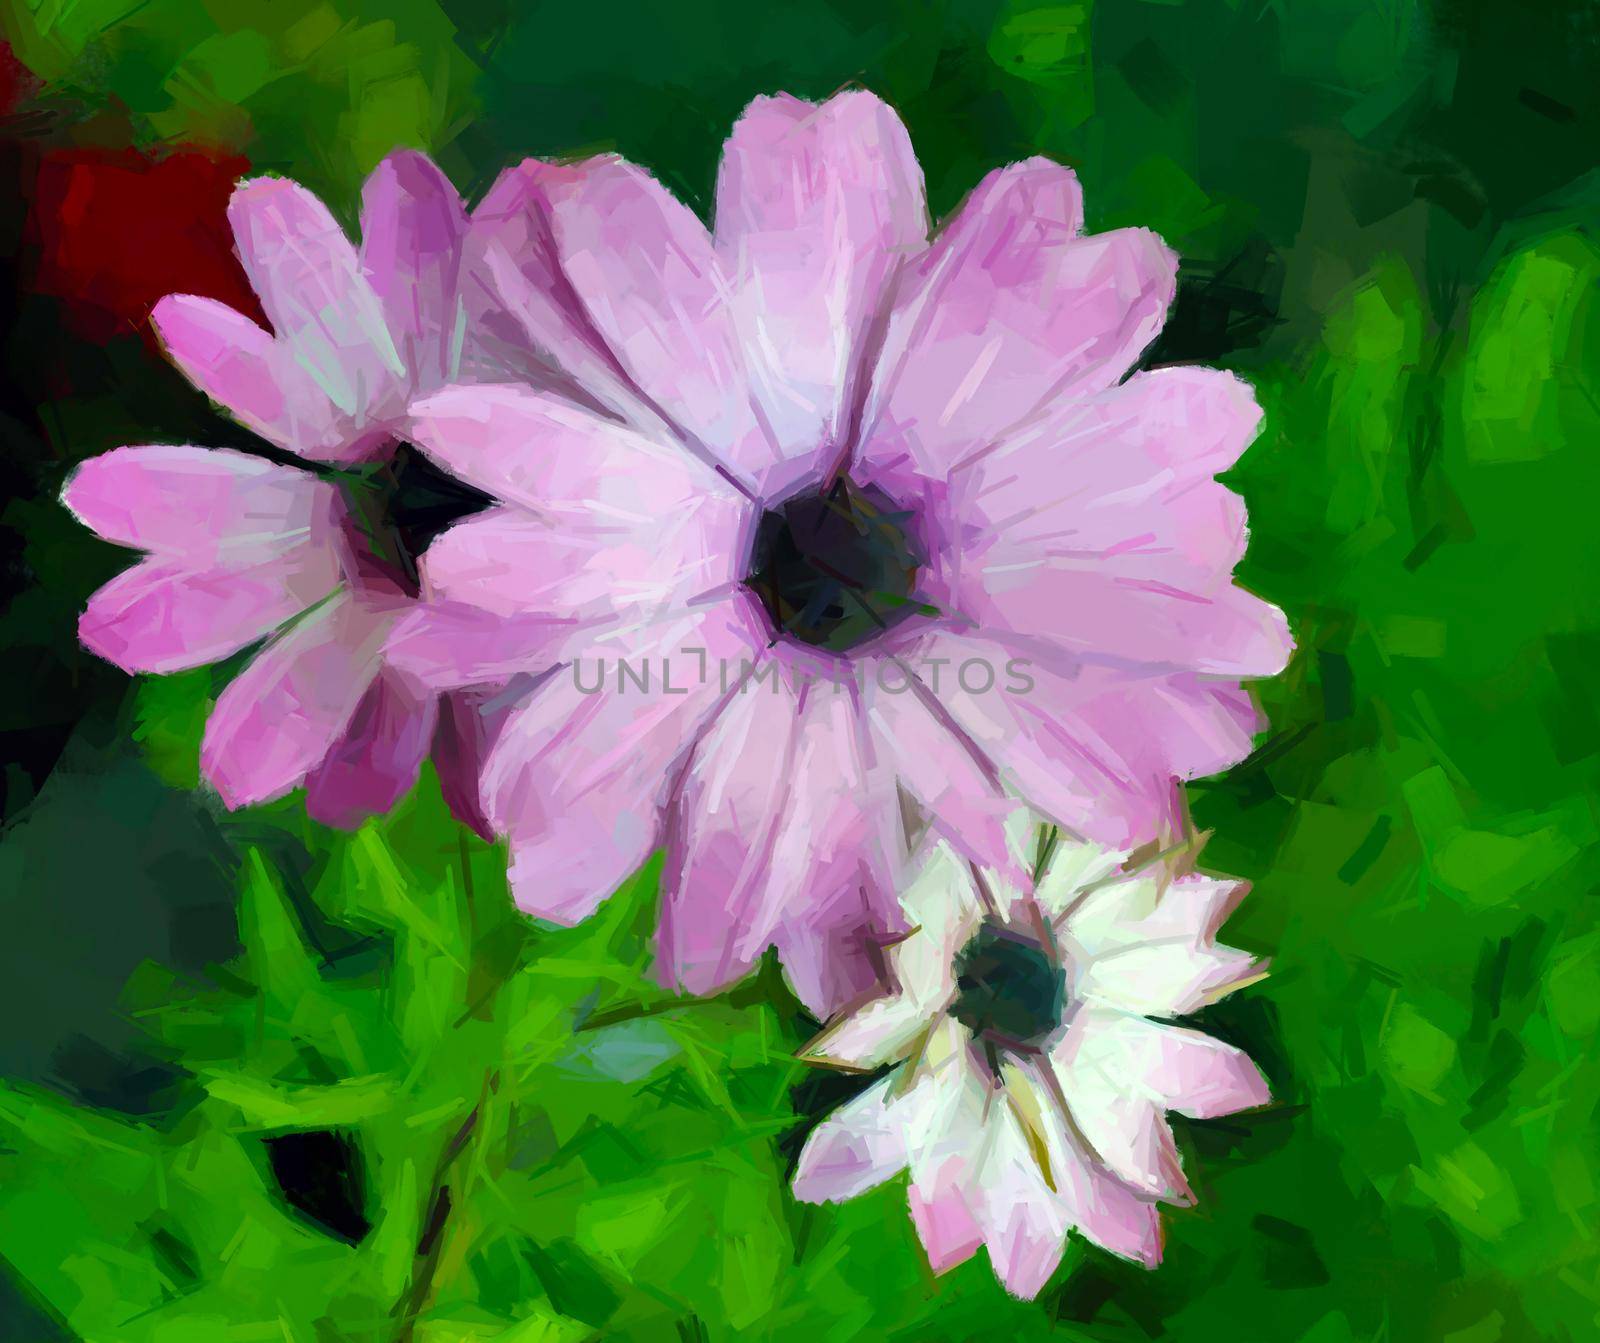 Purple flowers background by Lirch